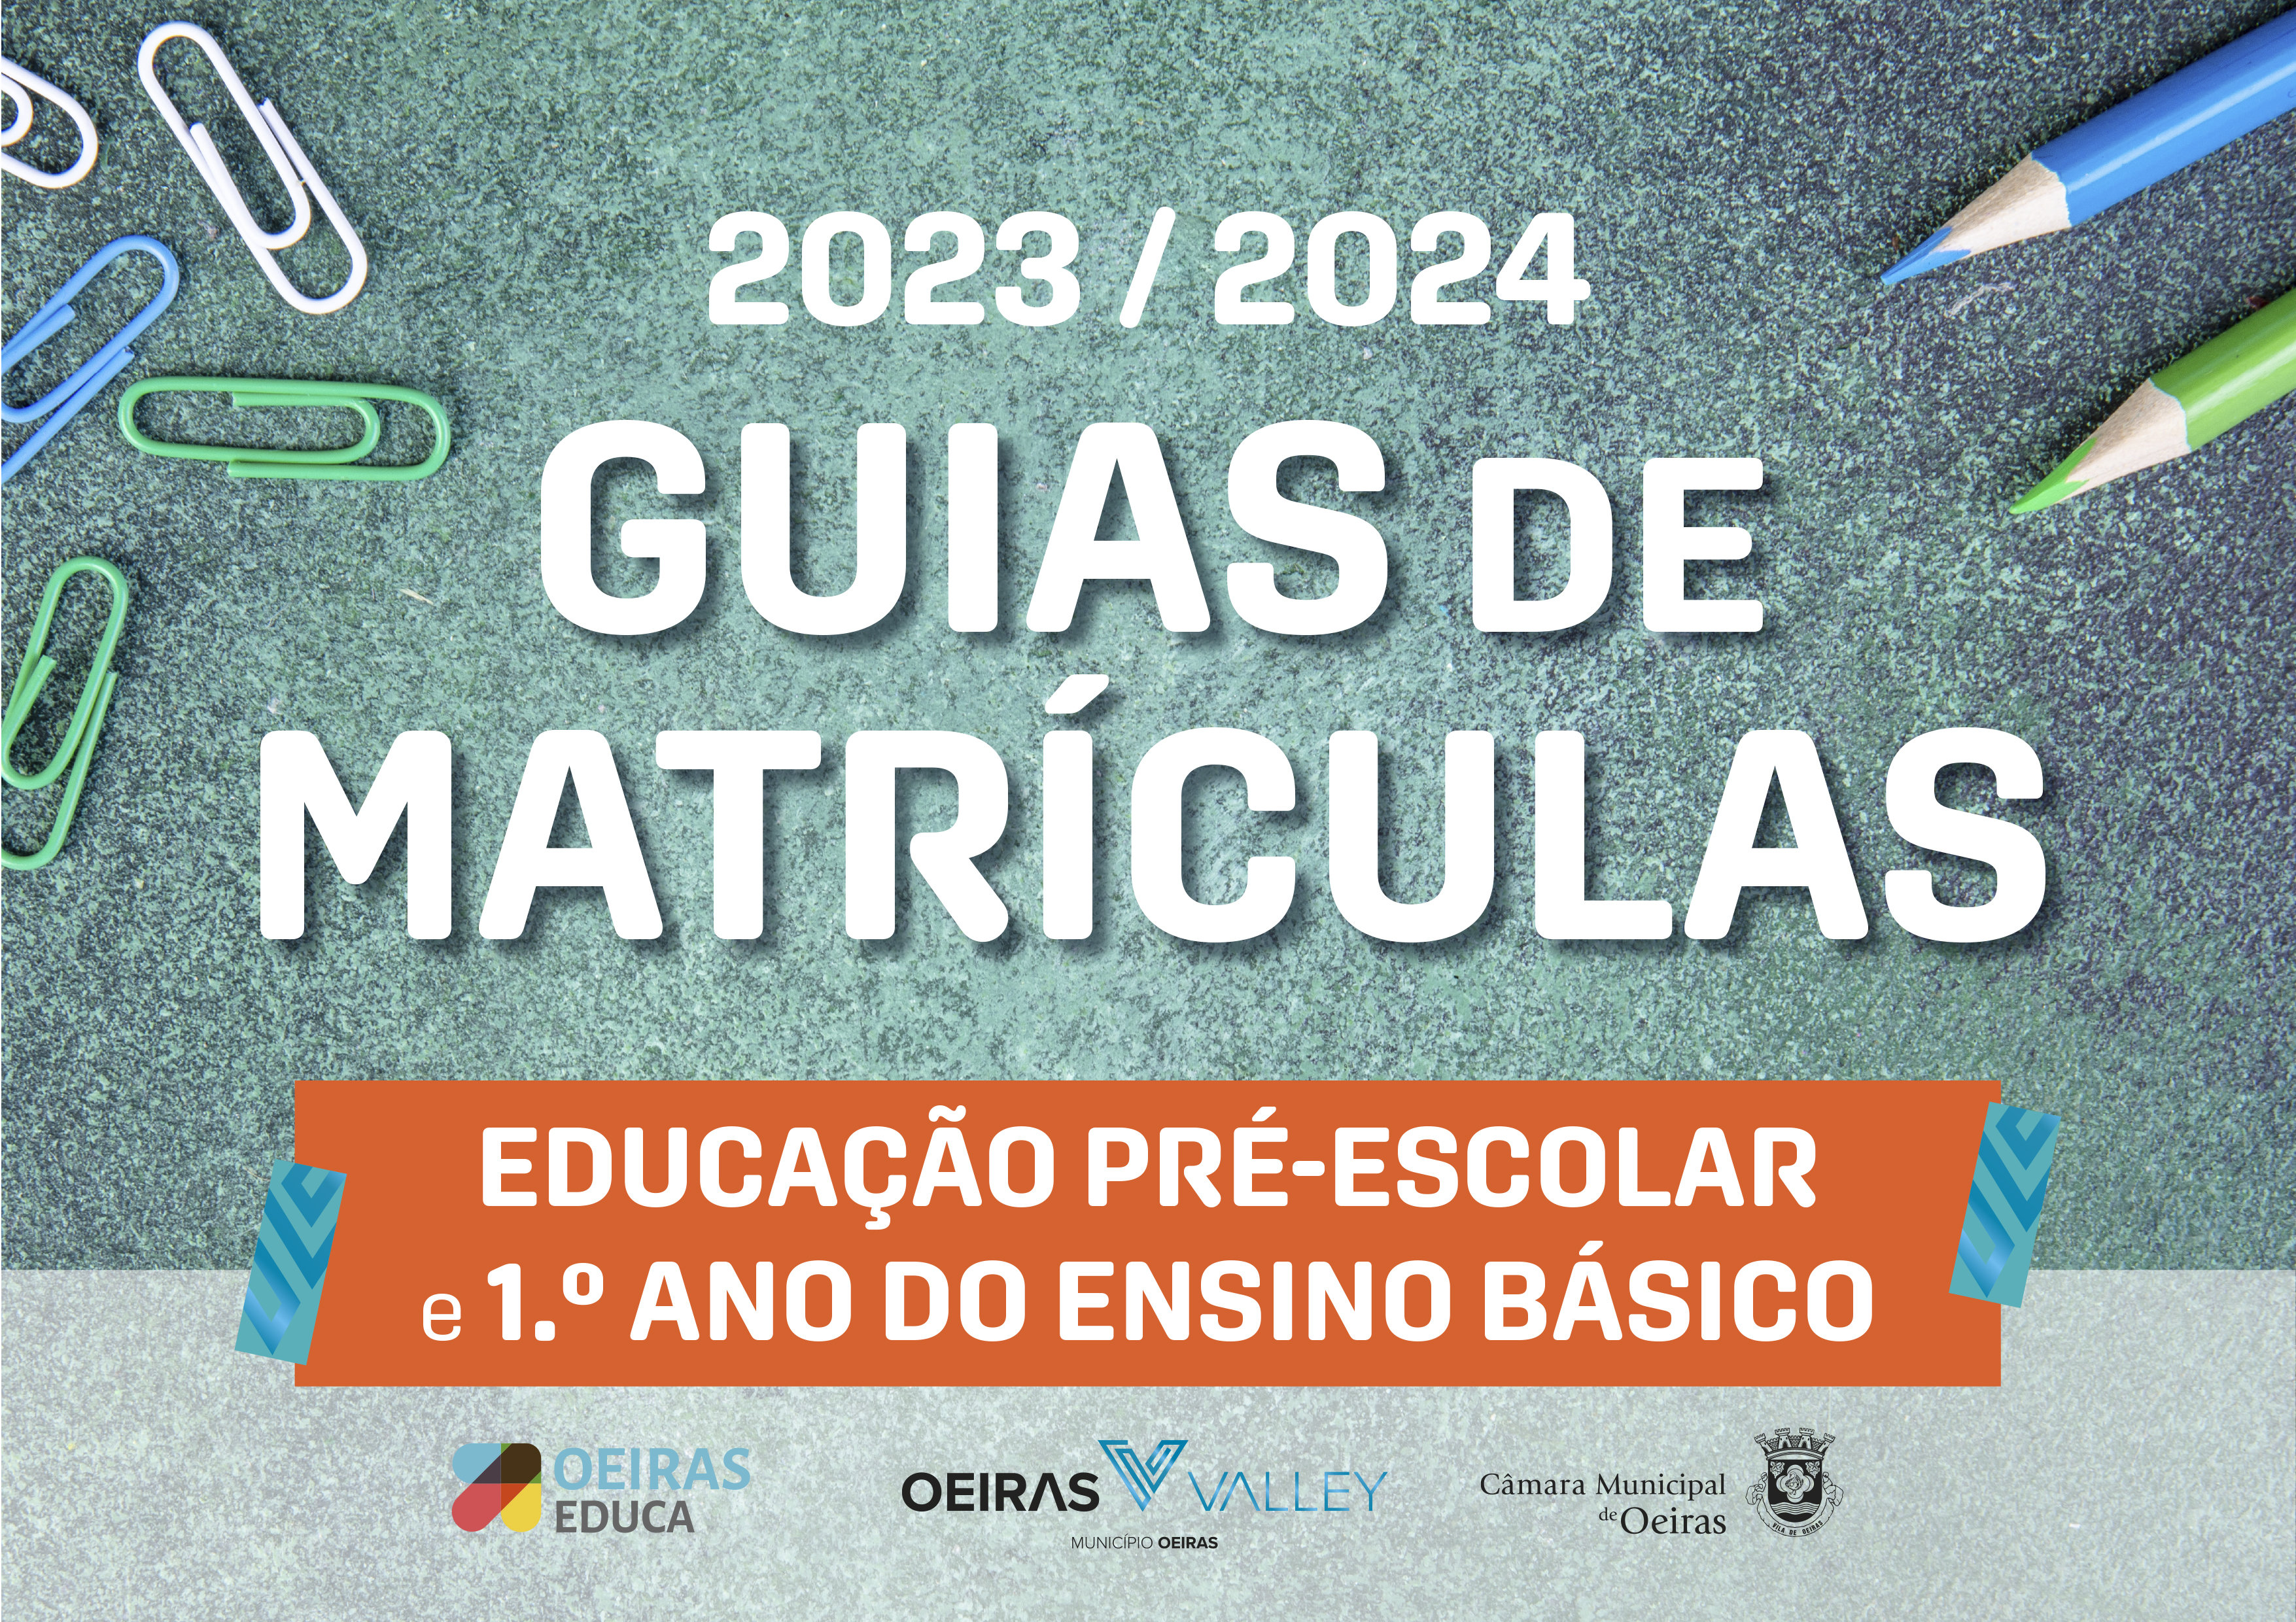 Guias de Matrículas 2023-2024_Educação Pré-escolar e 1.º ano de escolaridade